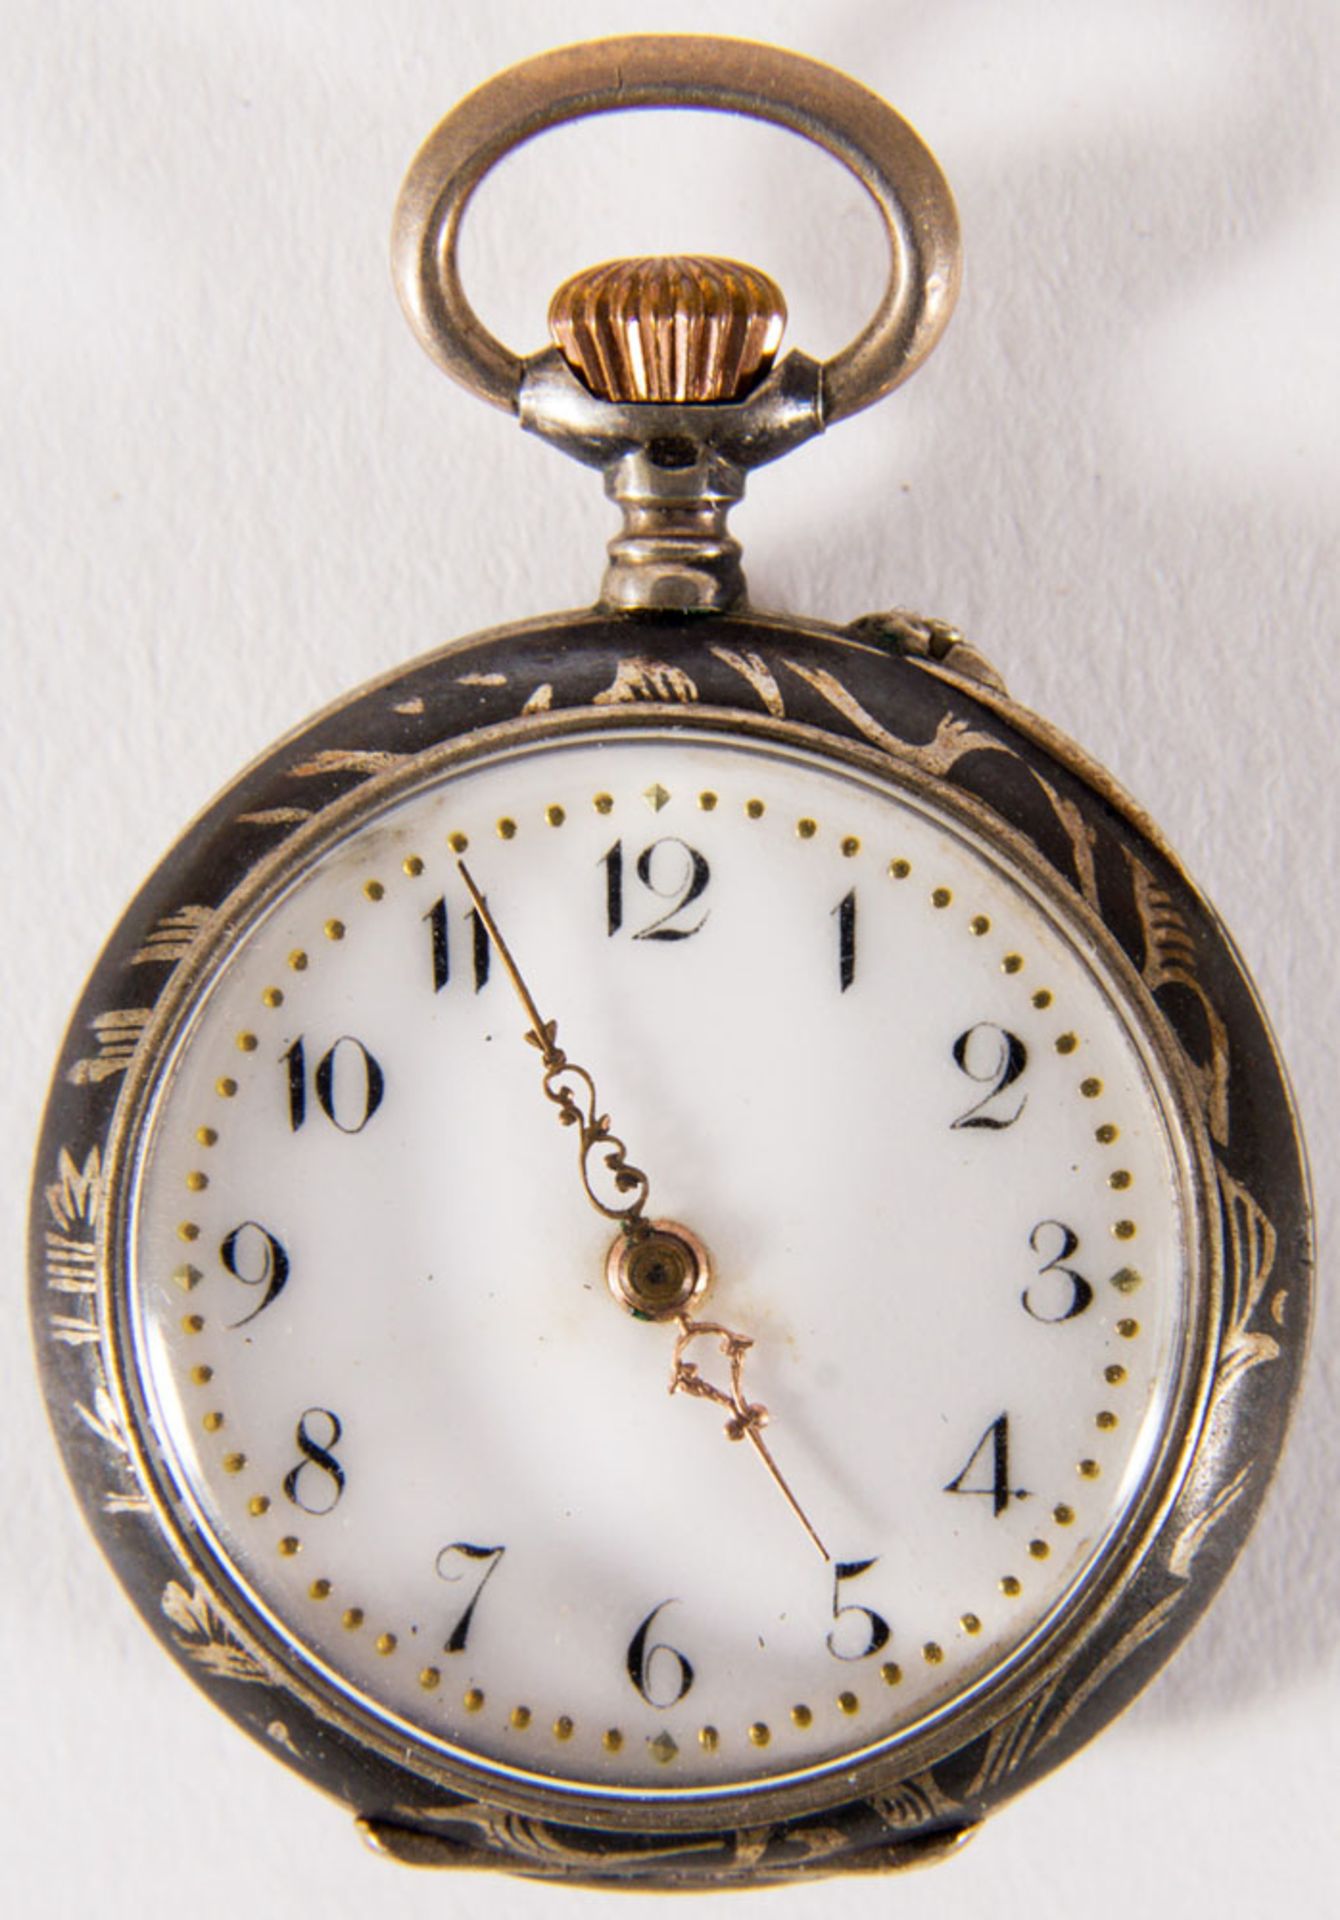 Antike Damentaschenuhr um 1900 in orig. Kartonage. Werk läuft an. Durchmesser ca 30mm. - Image 2 of 10